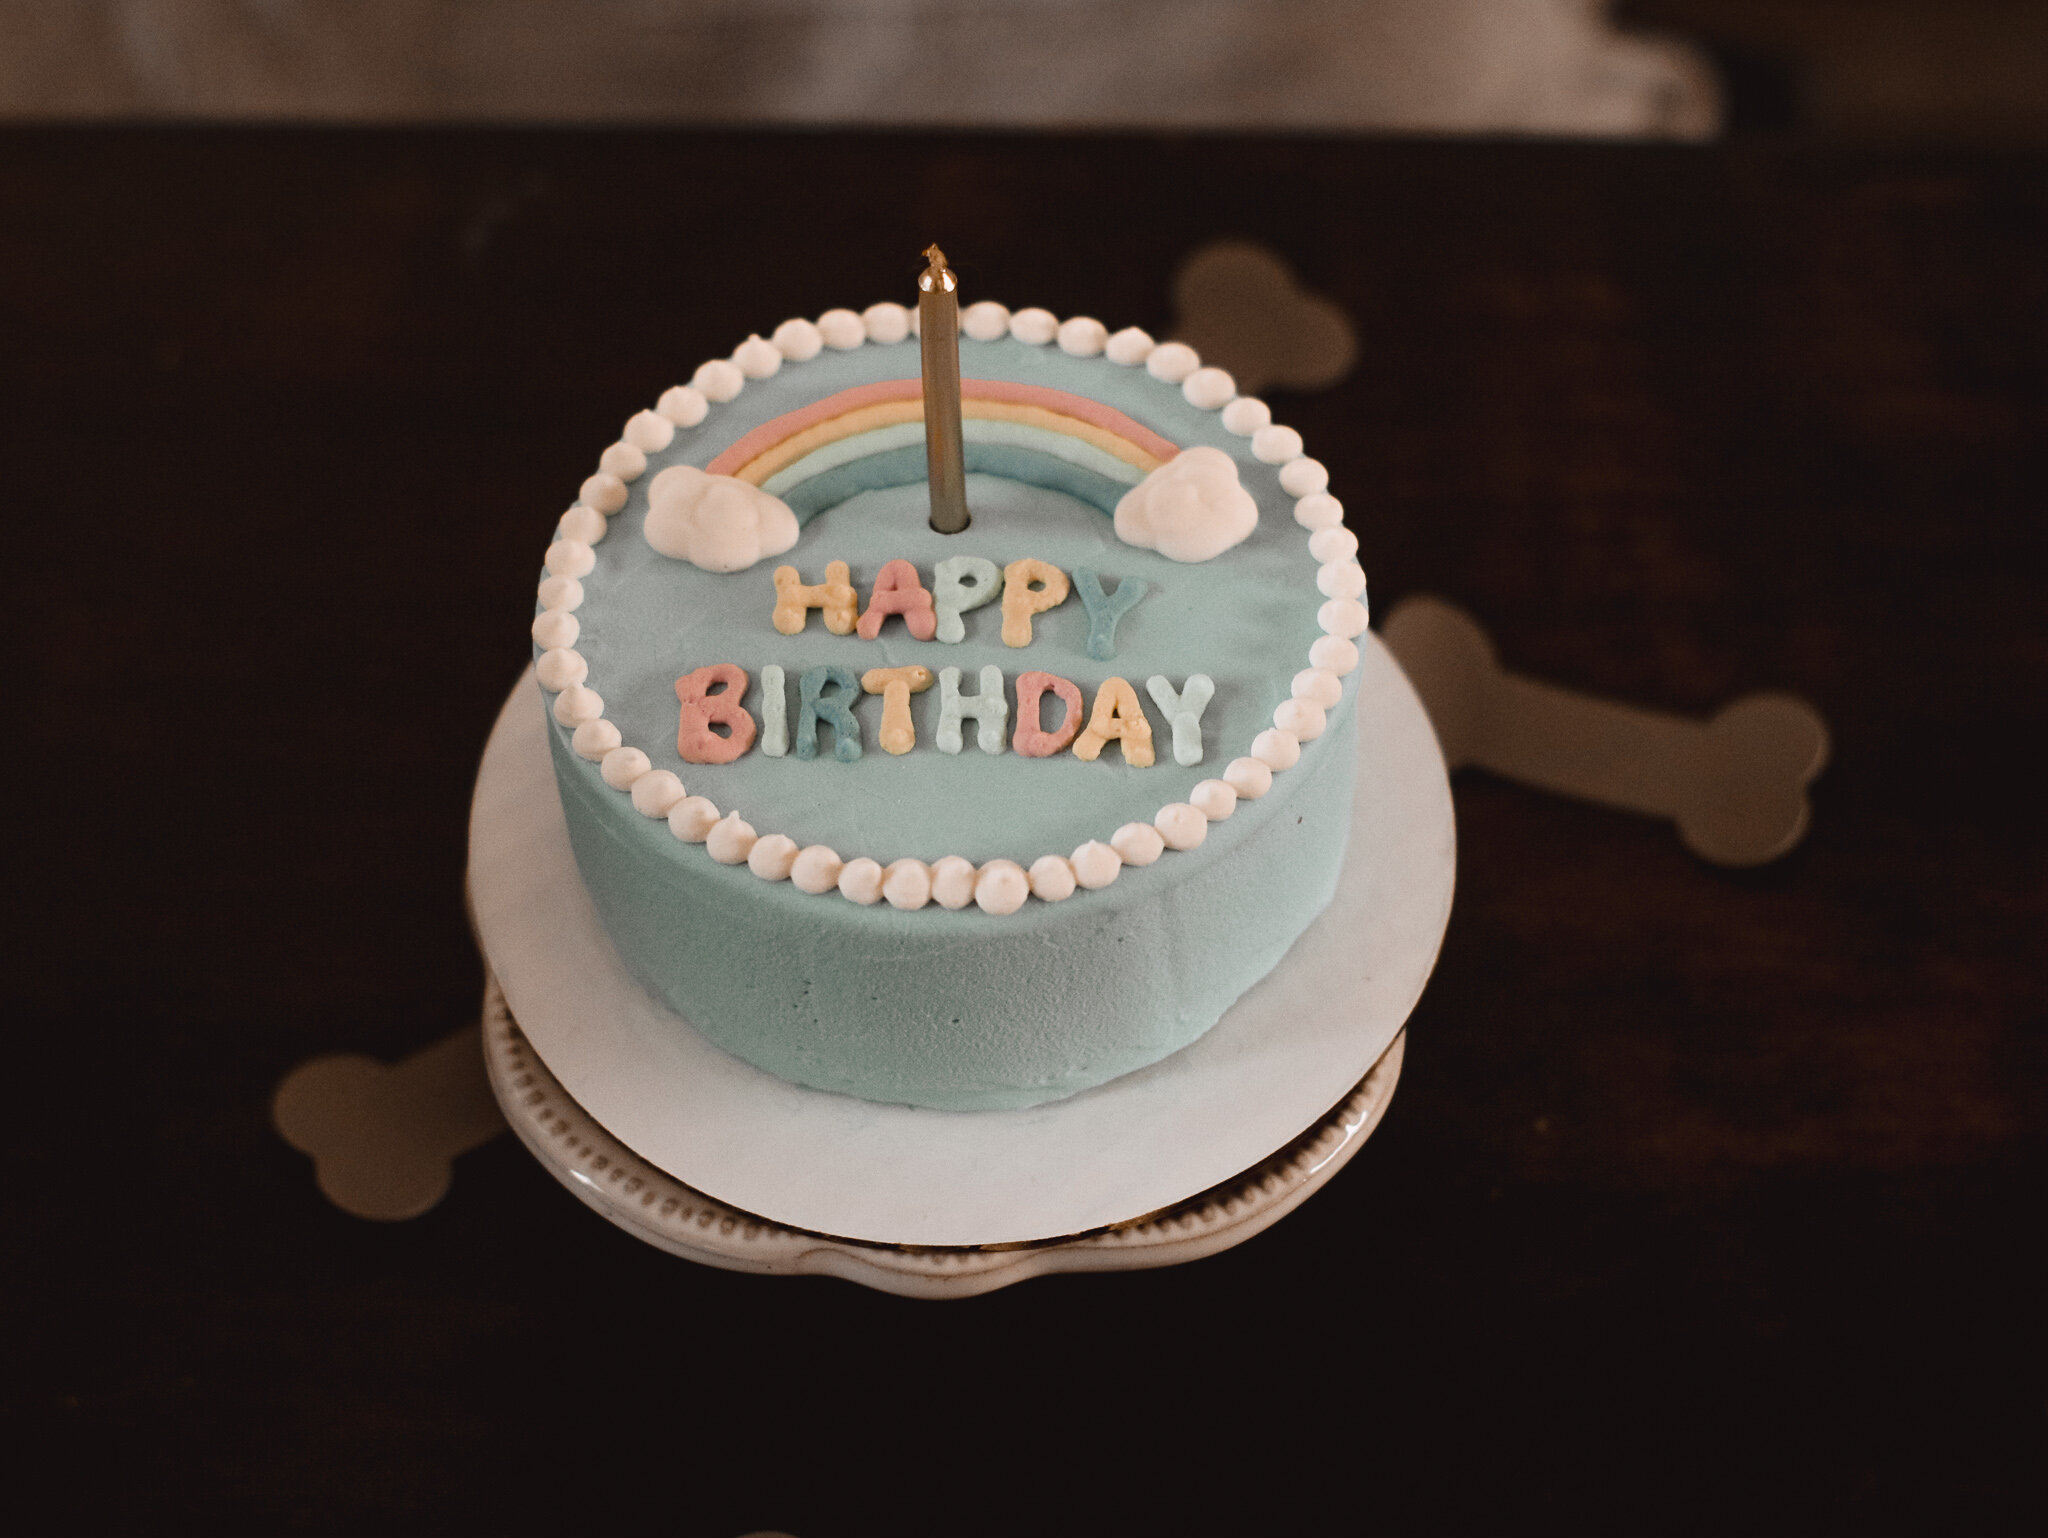 Woofpak Kitchen Birthday Cake 9- Amanda N Hammond.jpg